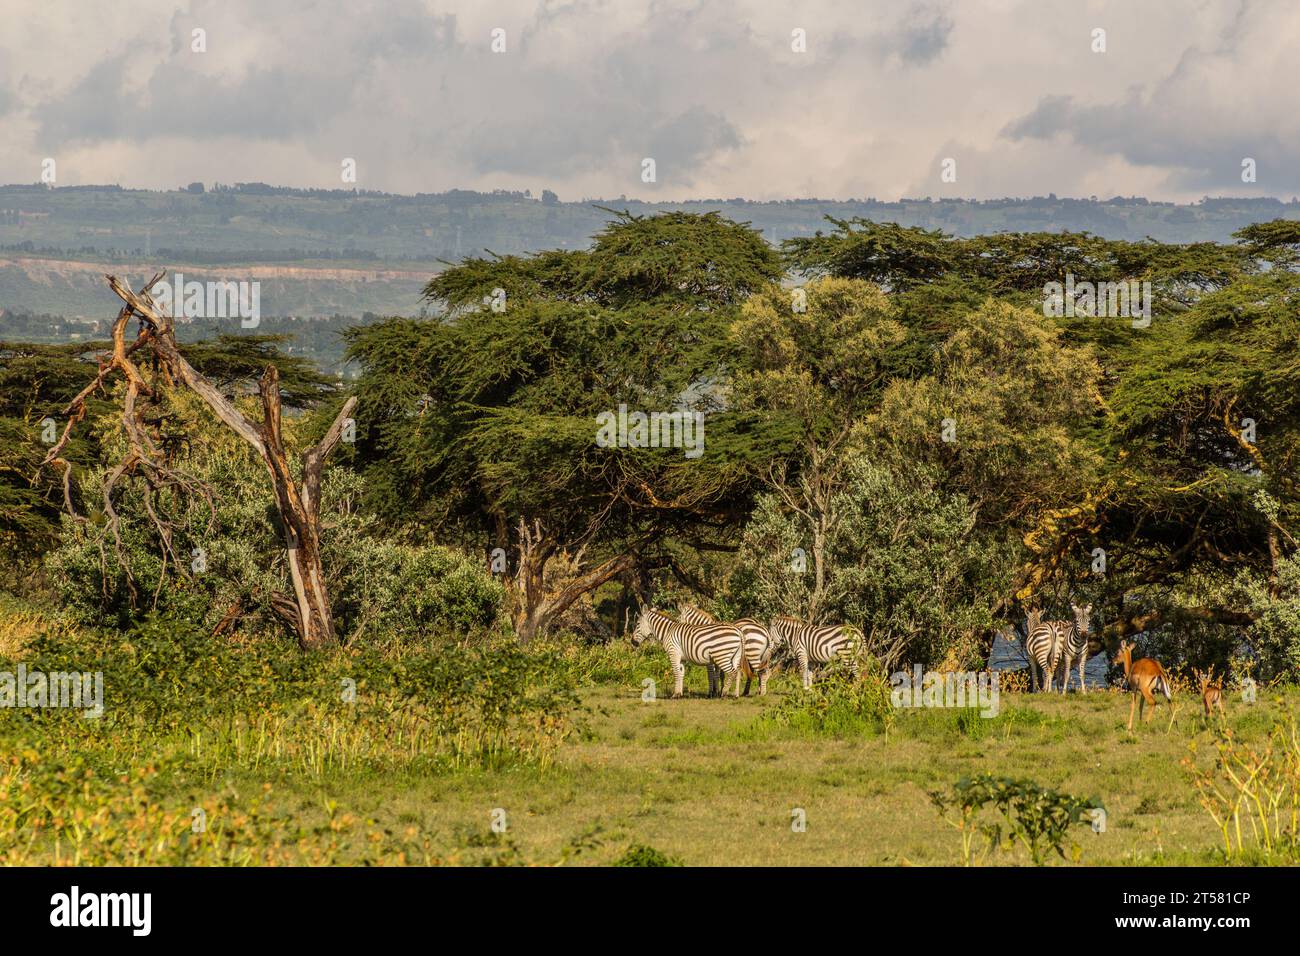 Burchell's zebras (Equus quagga burchellii) at Crescent Island Game Sanctuary on Naivasha lake, Kenya Stock Photo